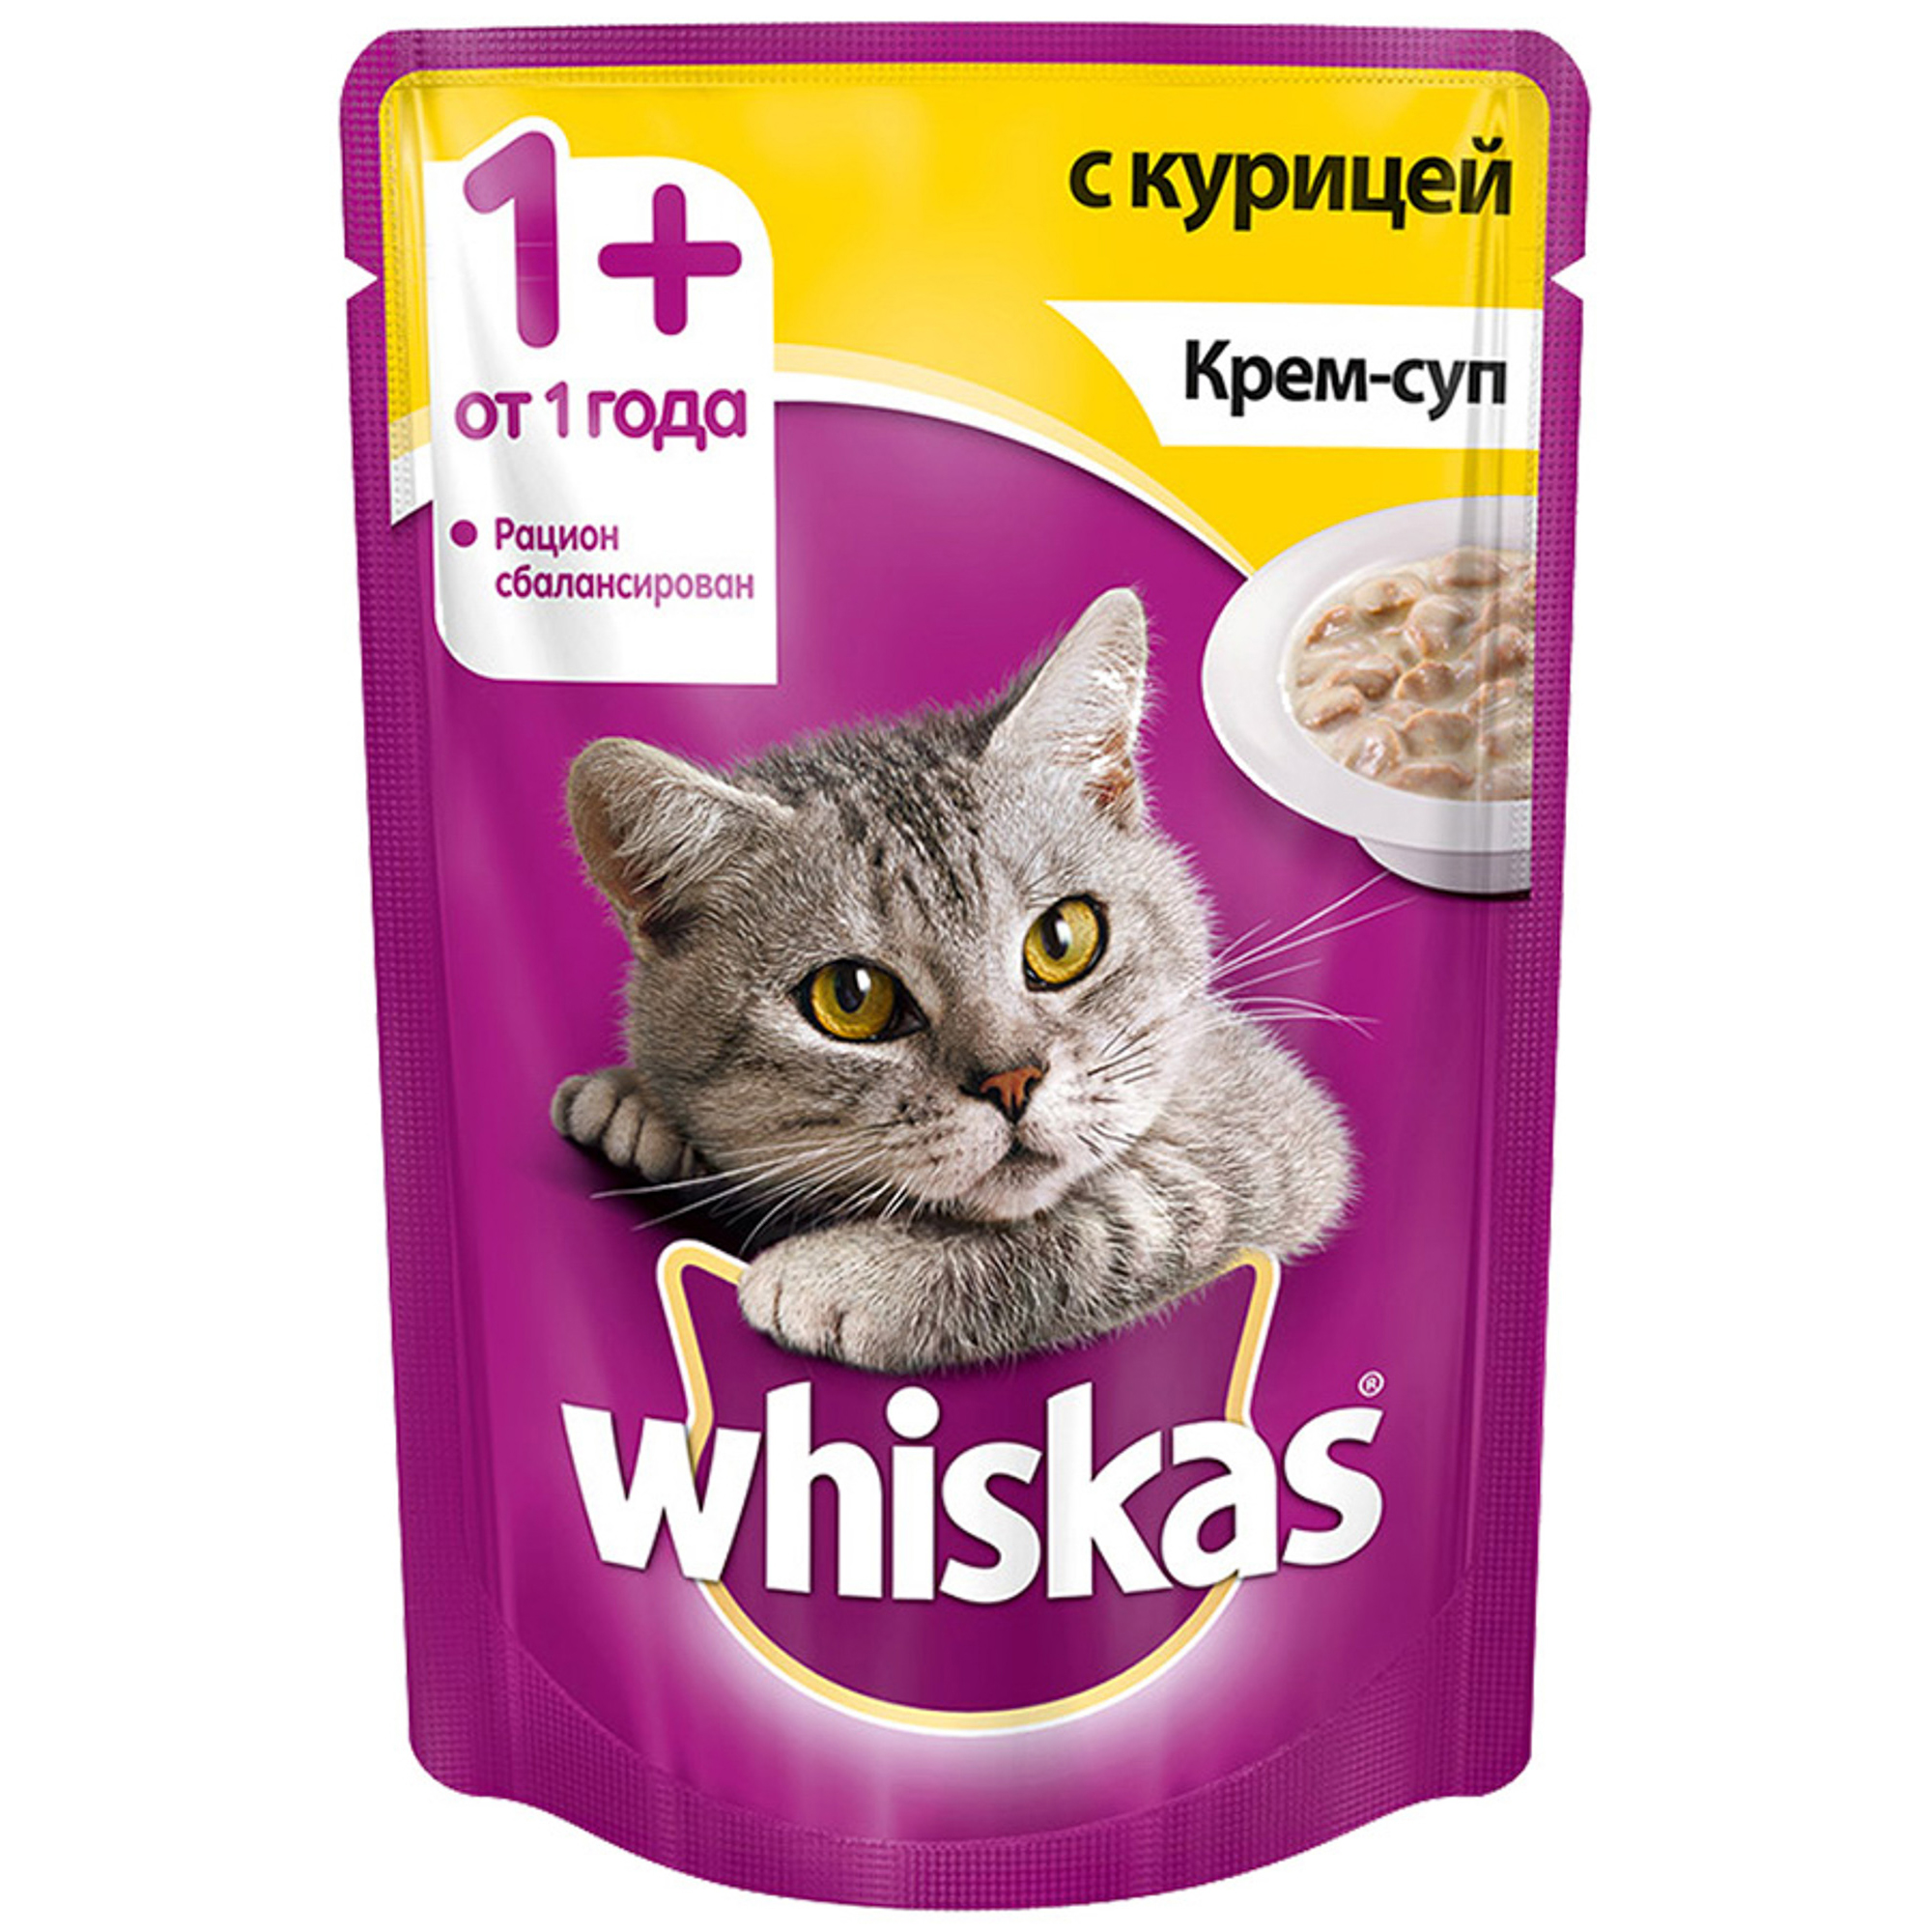 фото Корм для кошек whiskas для кошек от 1 года, крем-суп с курицей, 85г